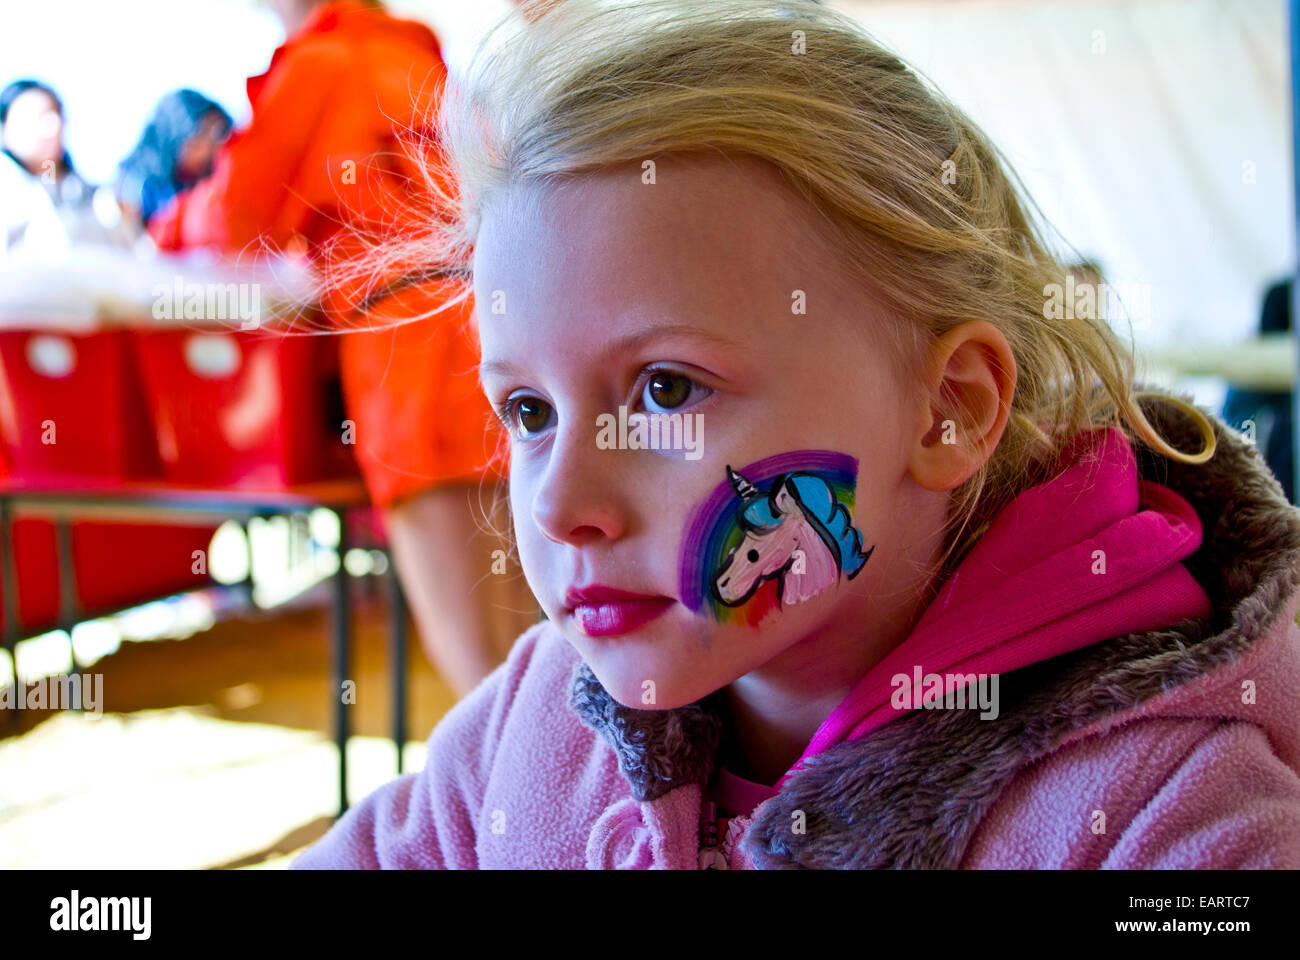 Une fille blonde avec une licorne arc-en-ciel et peint sur sa joue. Banque D'Images